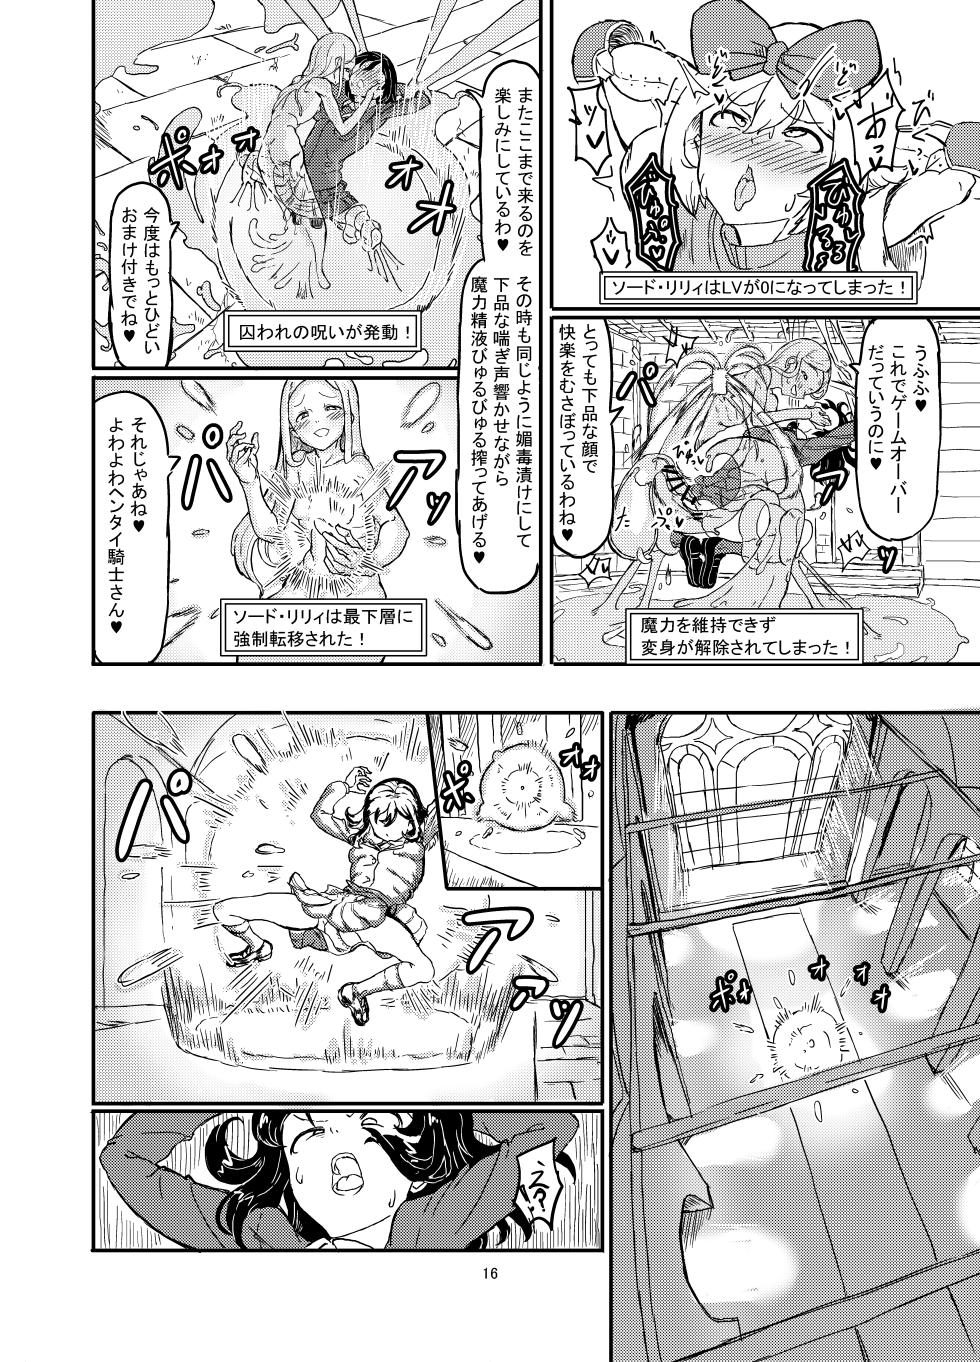 Shirokarasuya 2 - Page 17